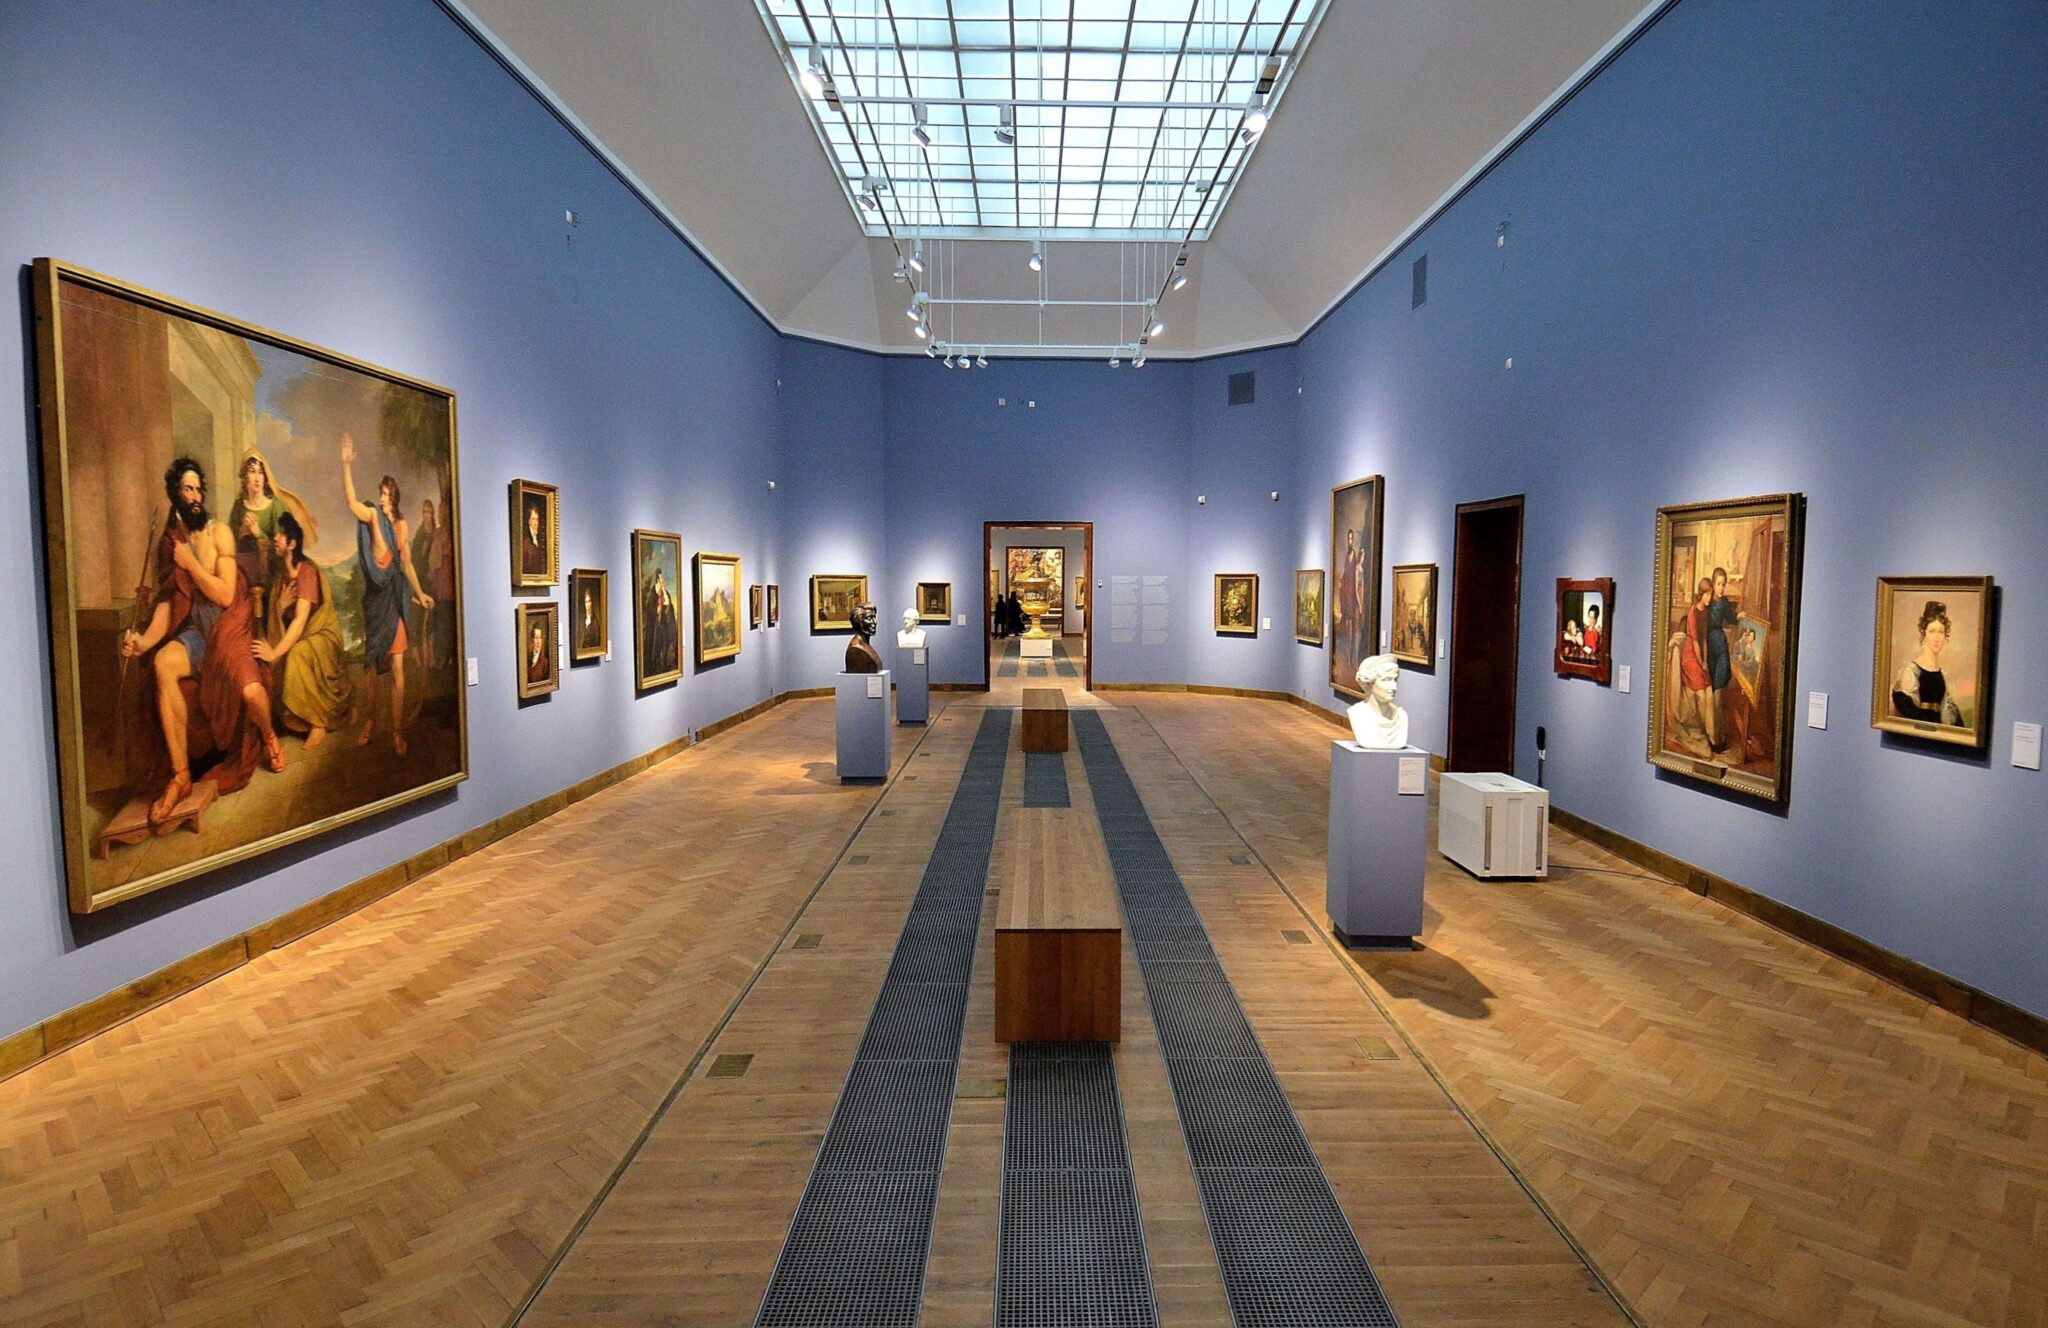 Національний музей у Варшаві відзначає 160-річчя. У програмі святкувань – заходи українською